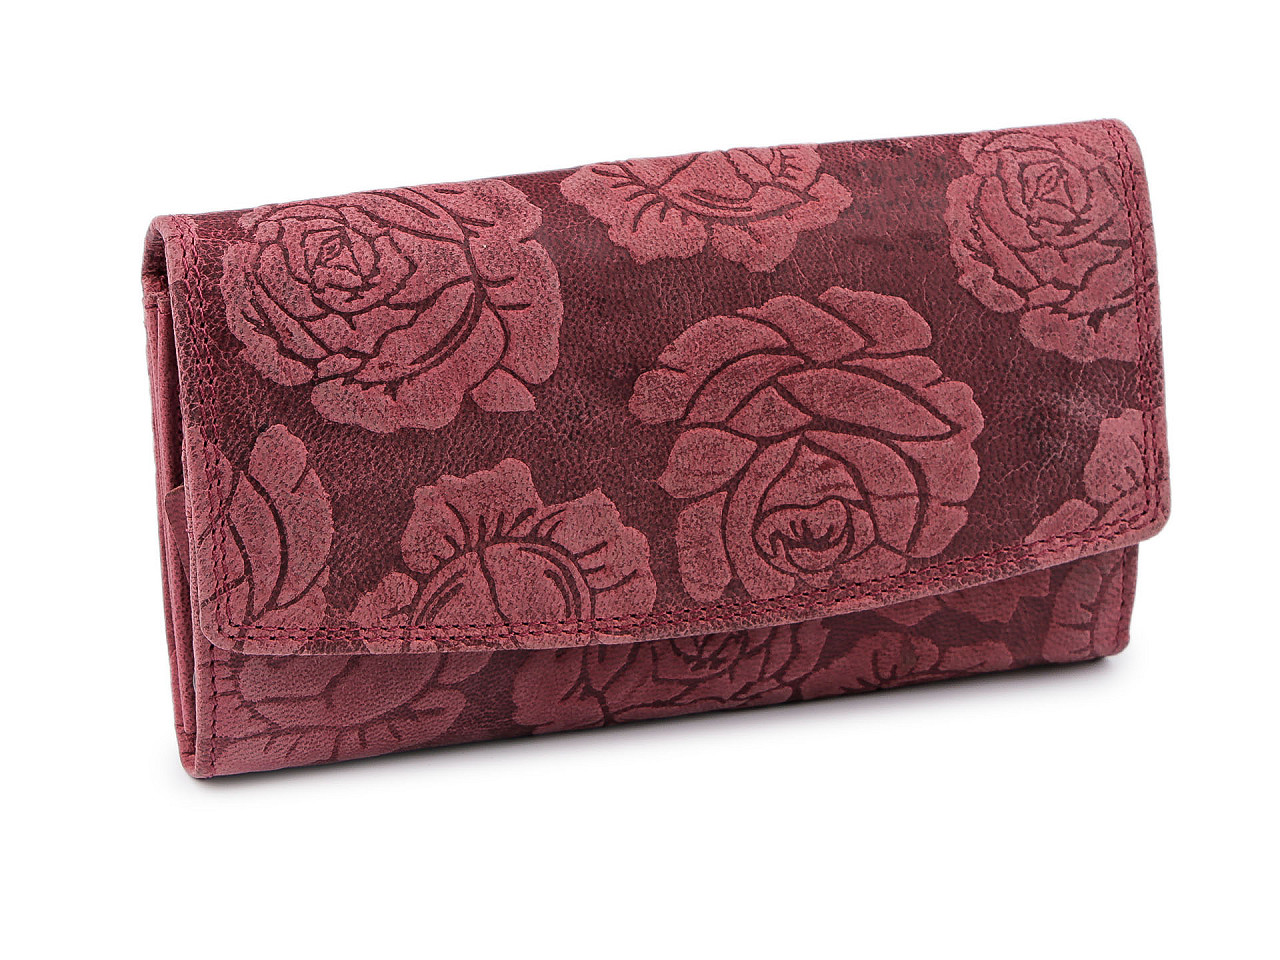 Portofel de damă din piele trandafir, ornamente 9,5x18 cm, roz antic, 1 buc